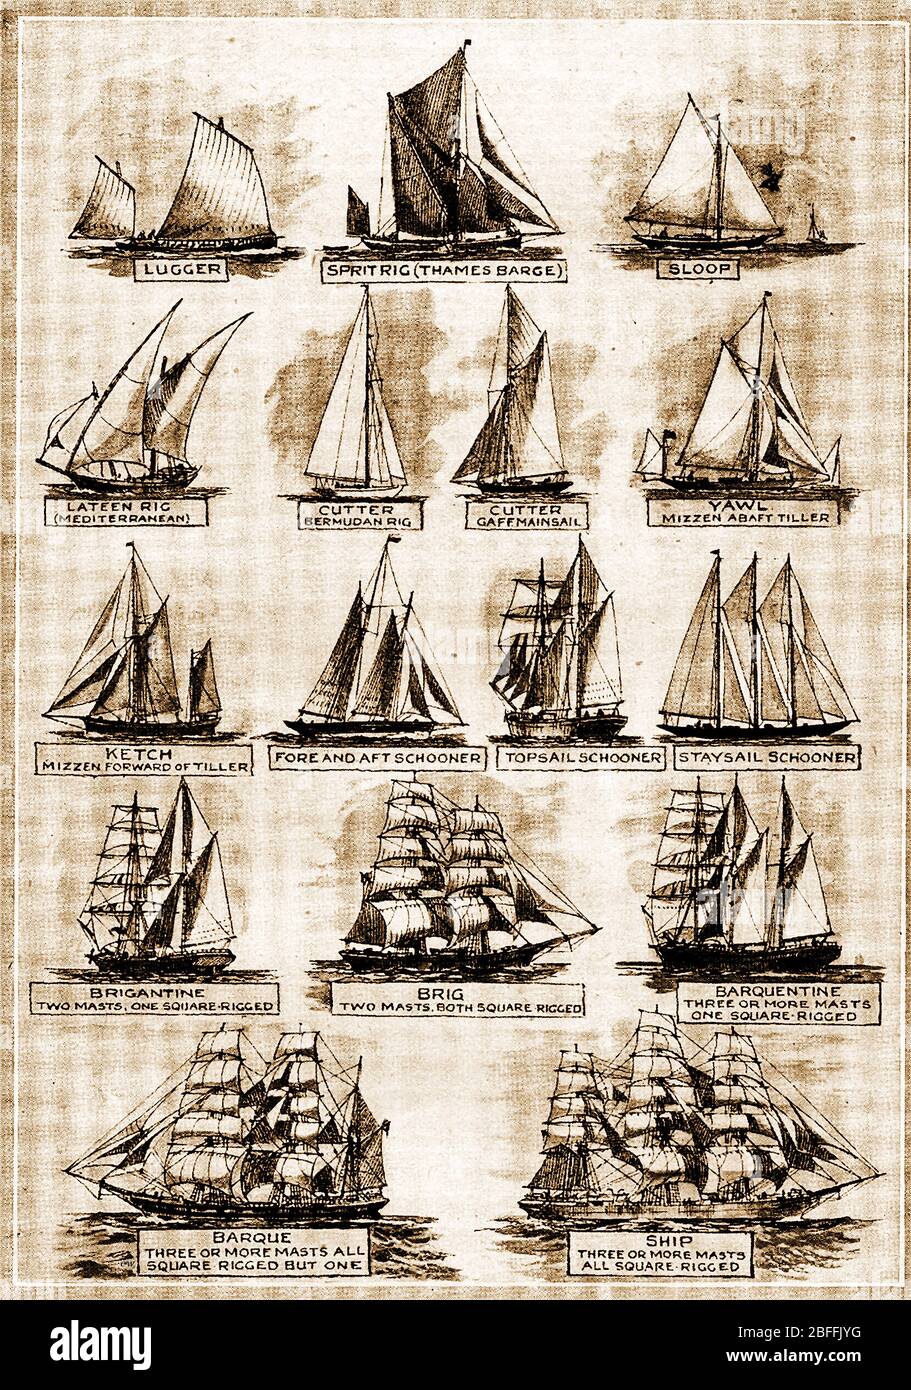 Eine 1940er-Illustration zeigt die Typen und Rigs verschiedener Arten von Segelschiffen / Booten Stockfoto